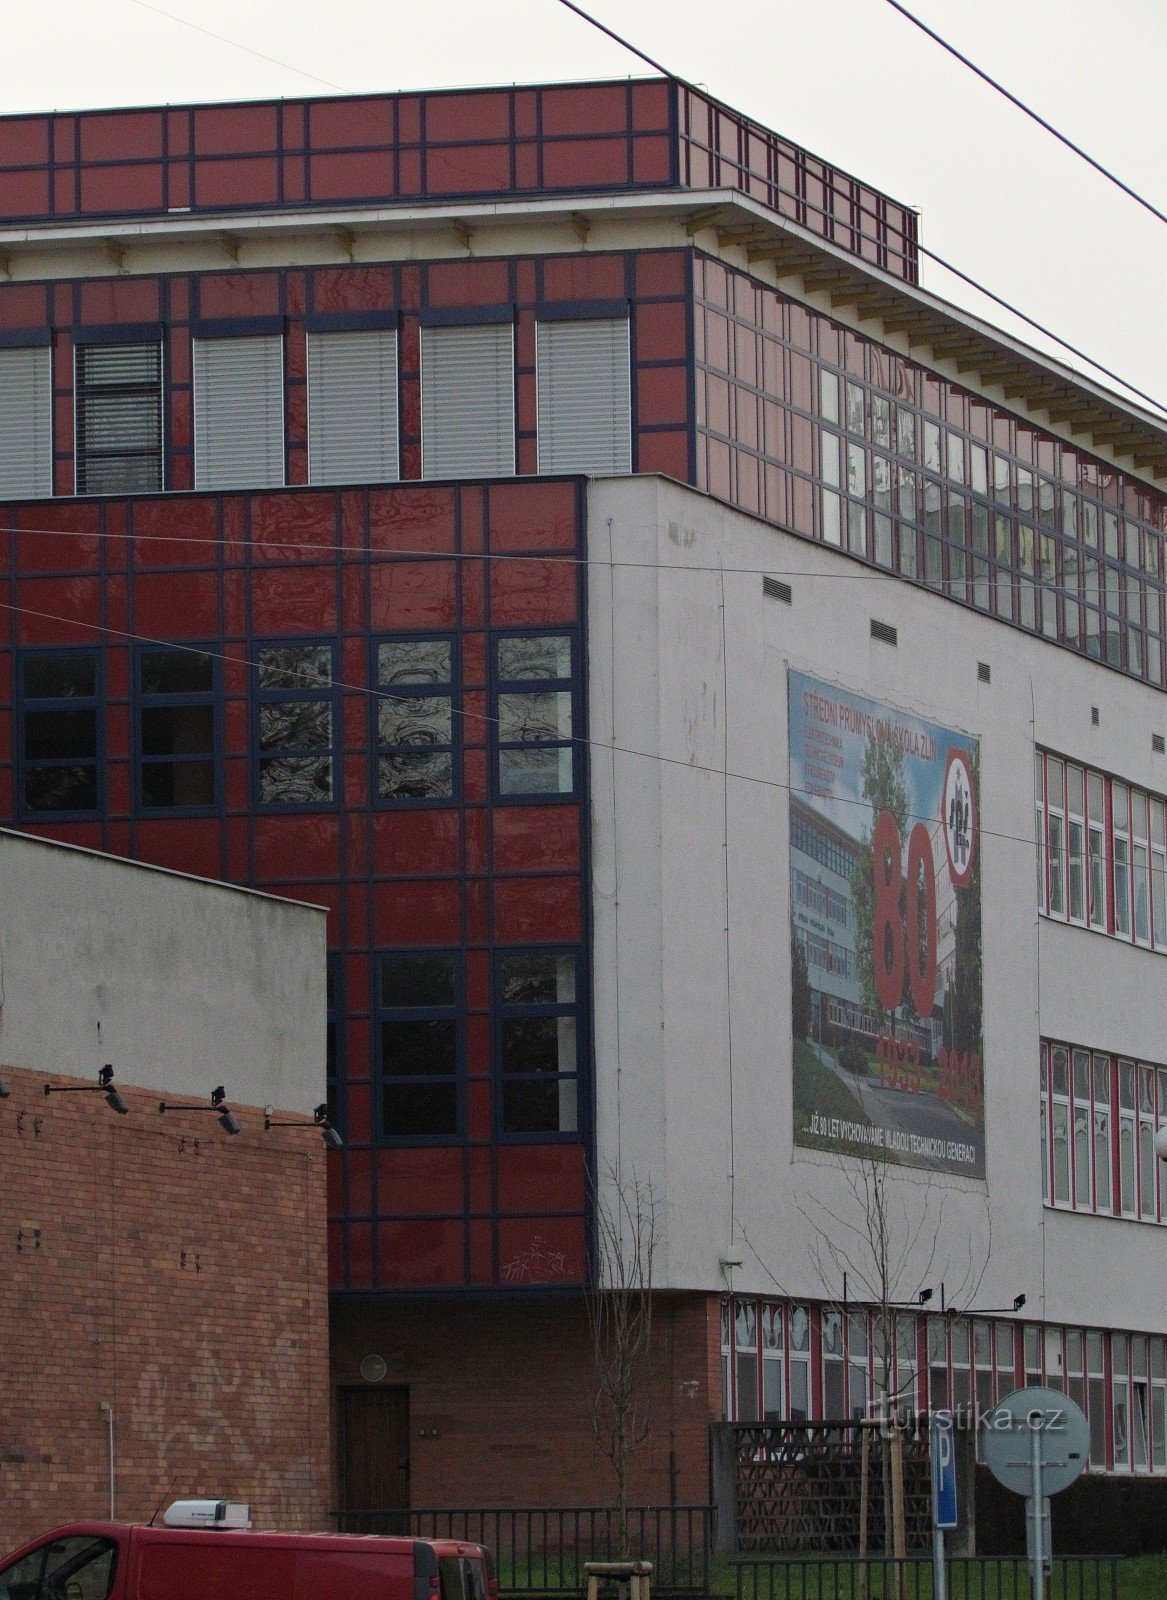 Zlín - bygninger af Secondary Industrial School